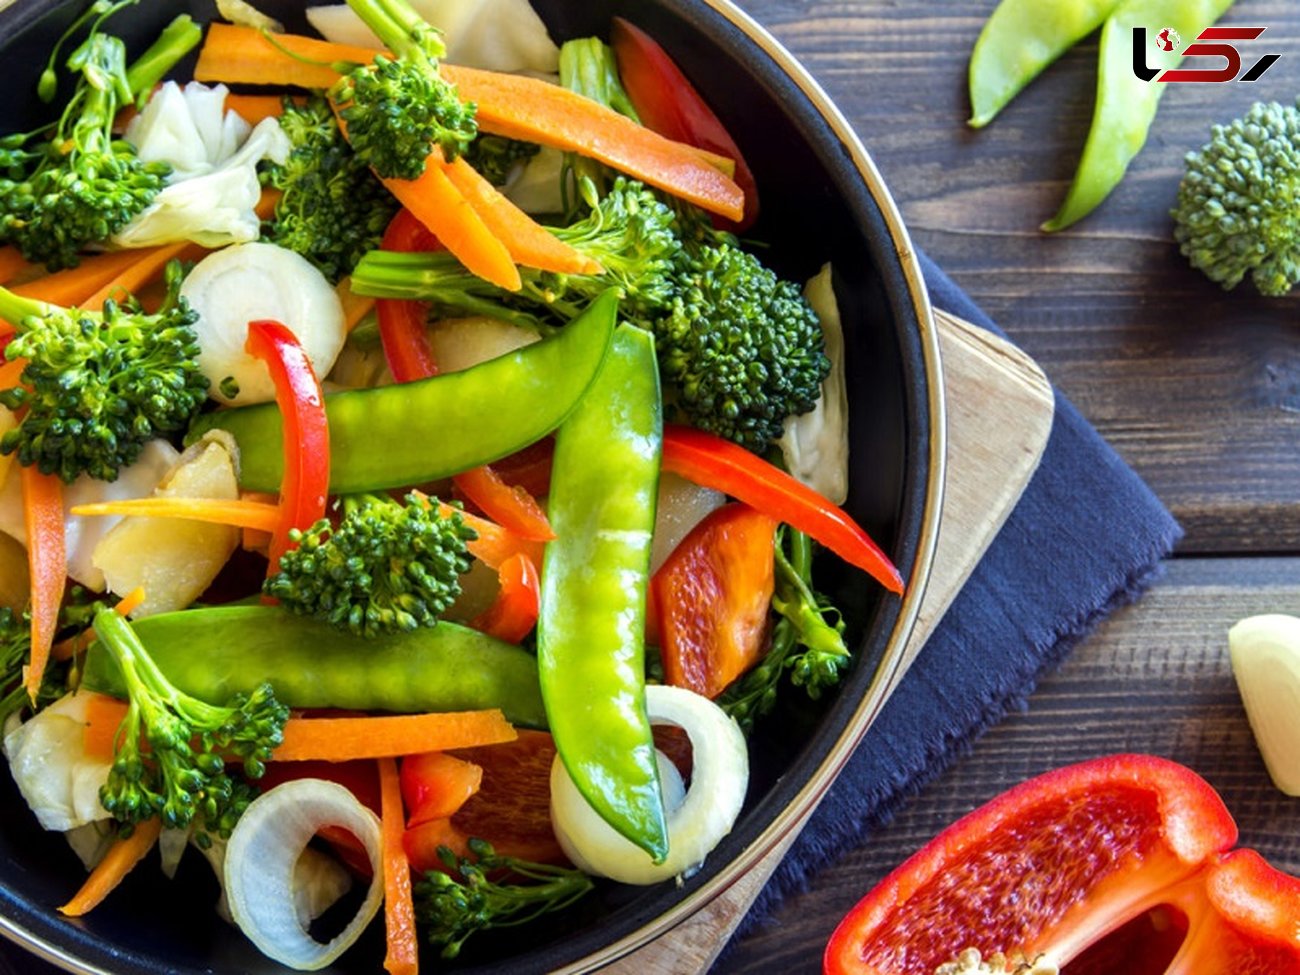 لاغری فوری با خوردن یک پیاله سبزیجات کم کالری